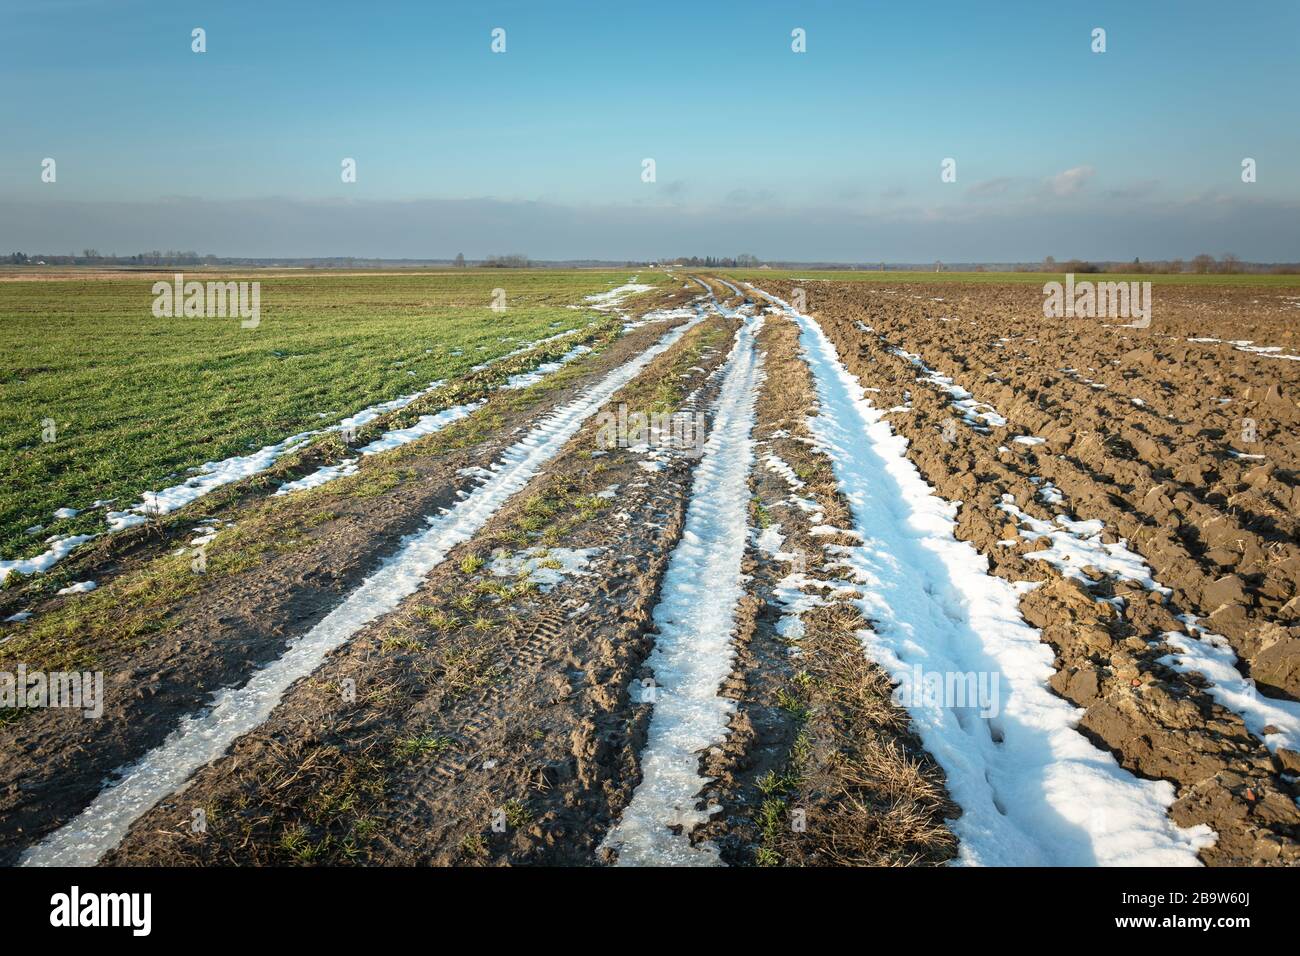 Dernière neige sur une route de terre à travers les champs, l'horizon et le ciel bleu Banque D'Images